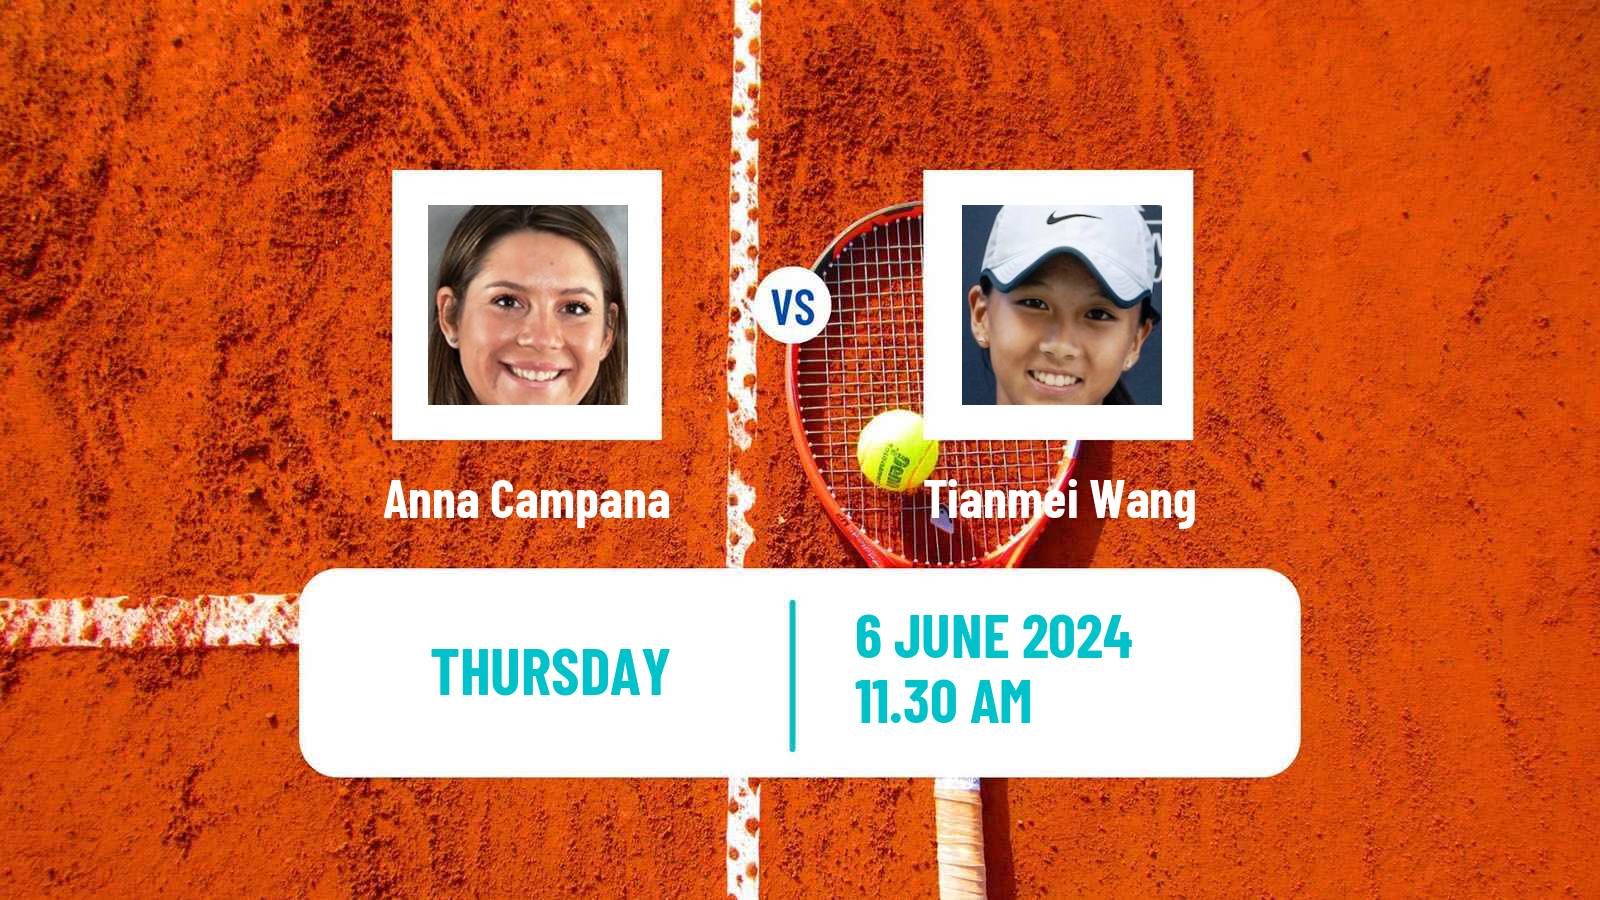 Tennis ITF W15 San Diego Ca 2 Women Anna Campana - Tianmei Wang